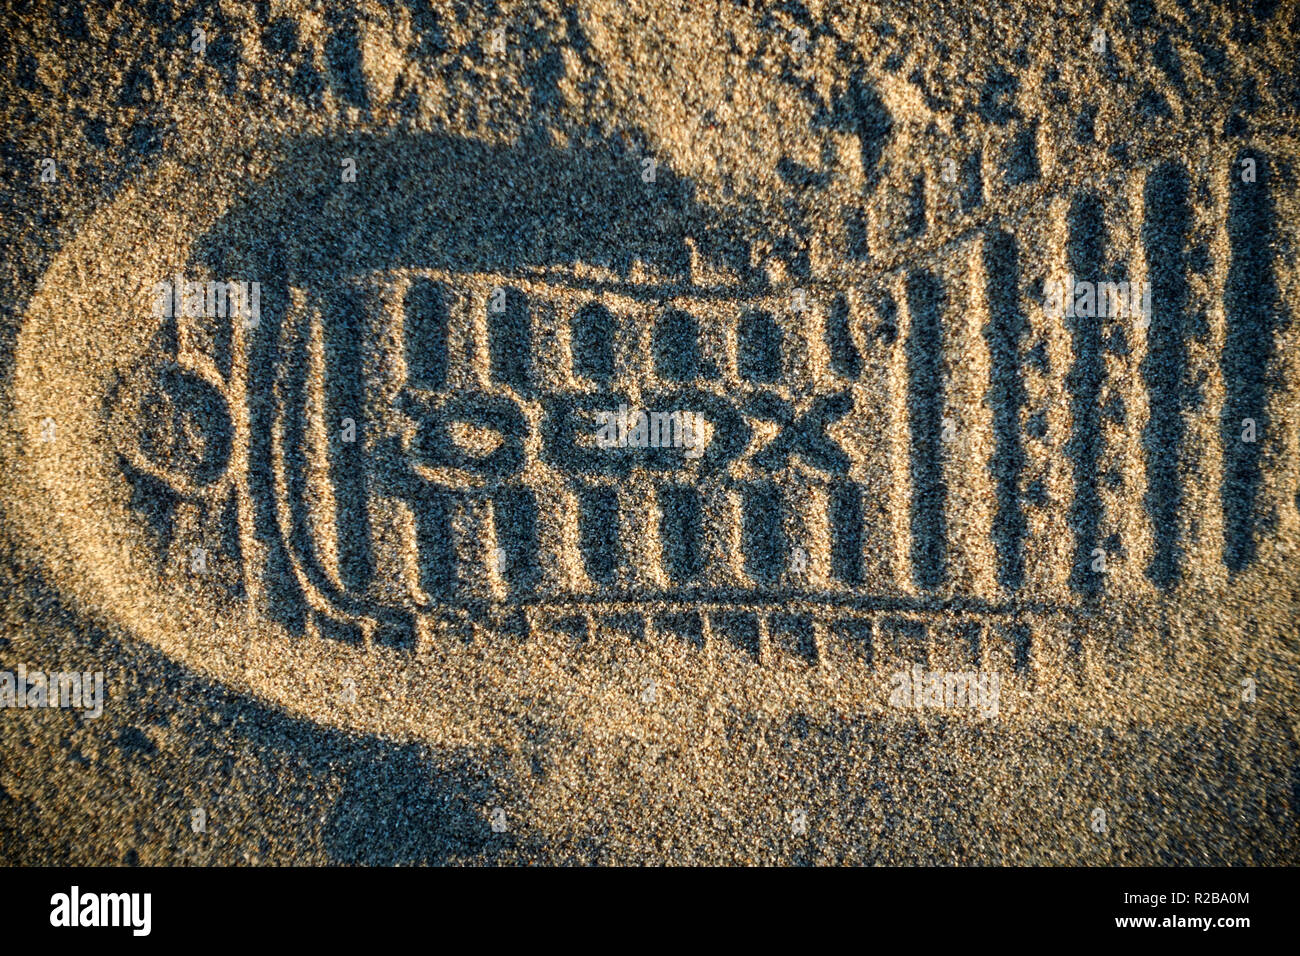 Marke Geox schuh Fußabdruck im Sand des Strandes Stockfoto